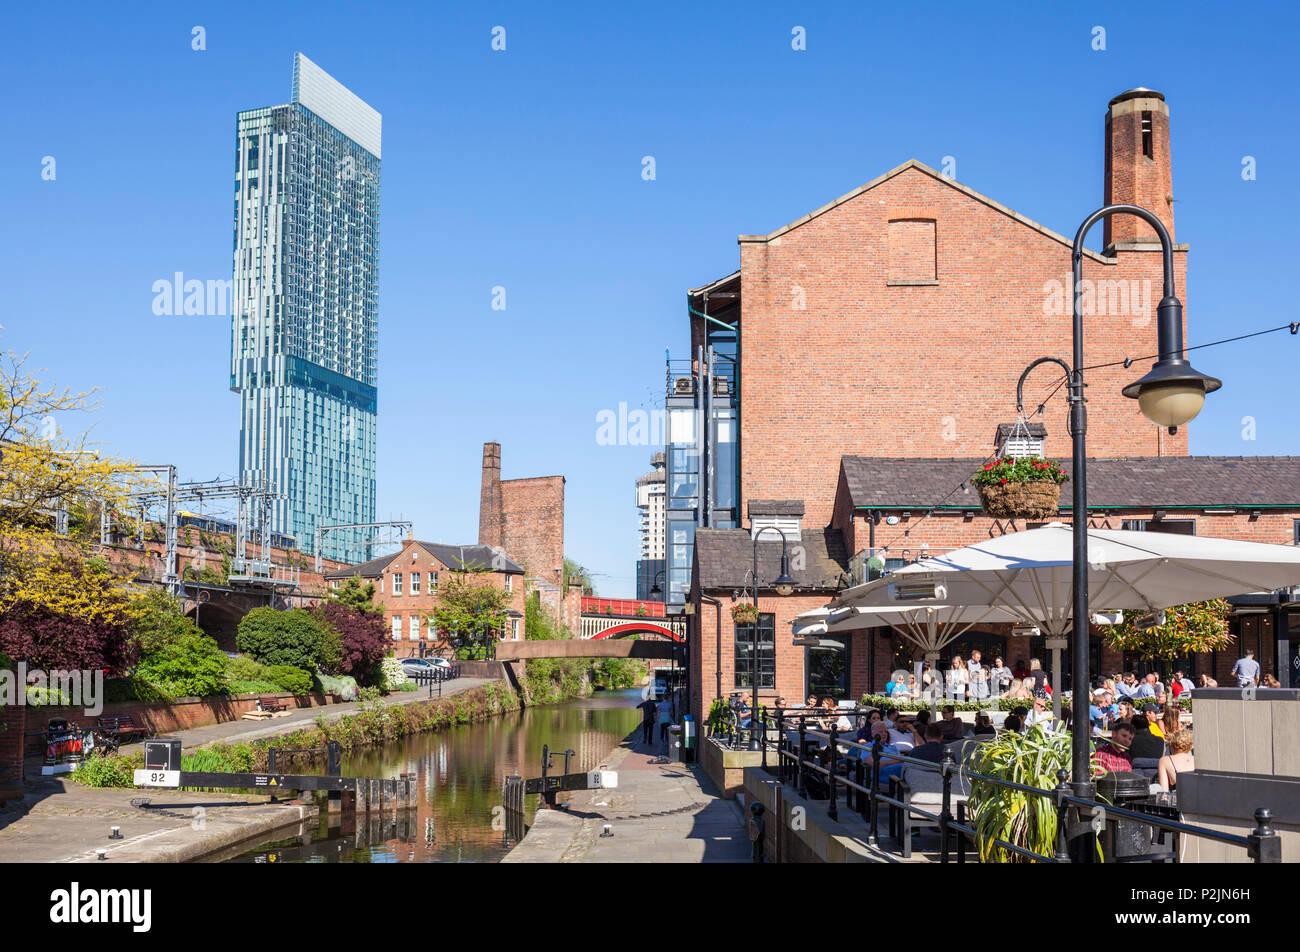 Angleterre Angleterre Manchester Greater Manchester centre-ville centre-ville vue de la beetham tower et canal de Bridgewater de halage du canal de Manchester uk Banque D'Images